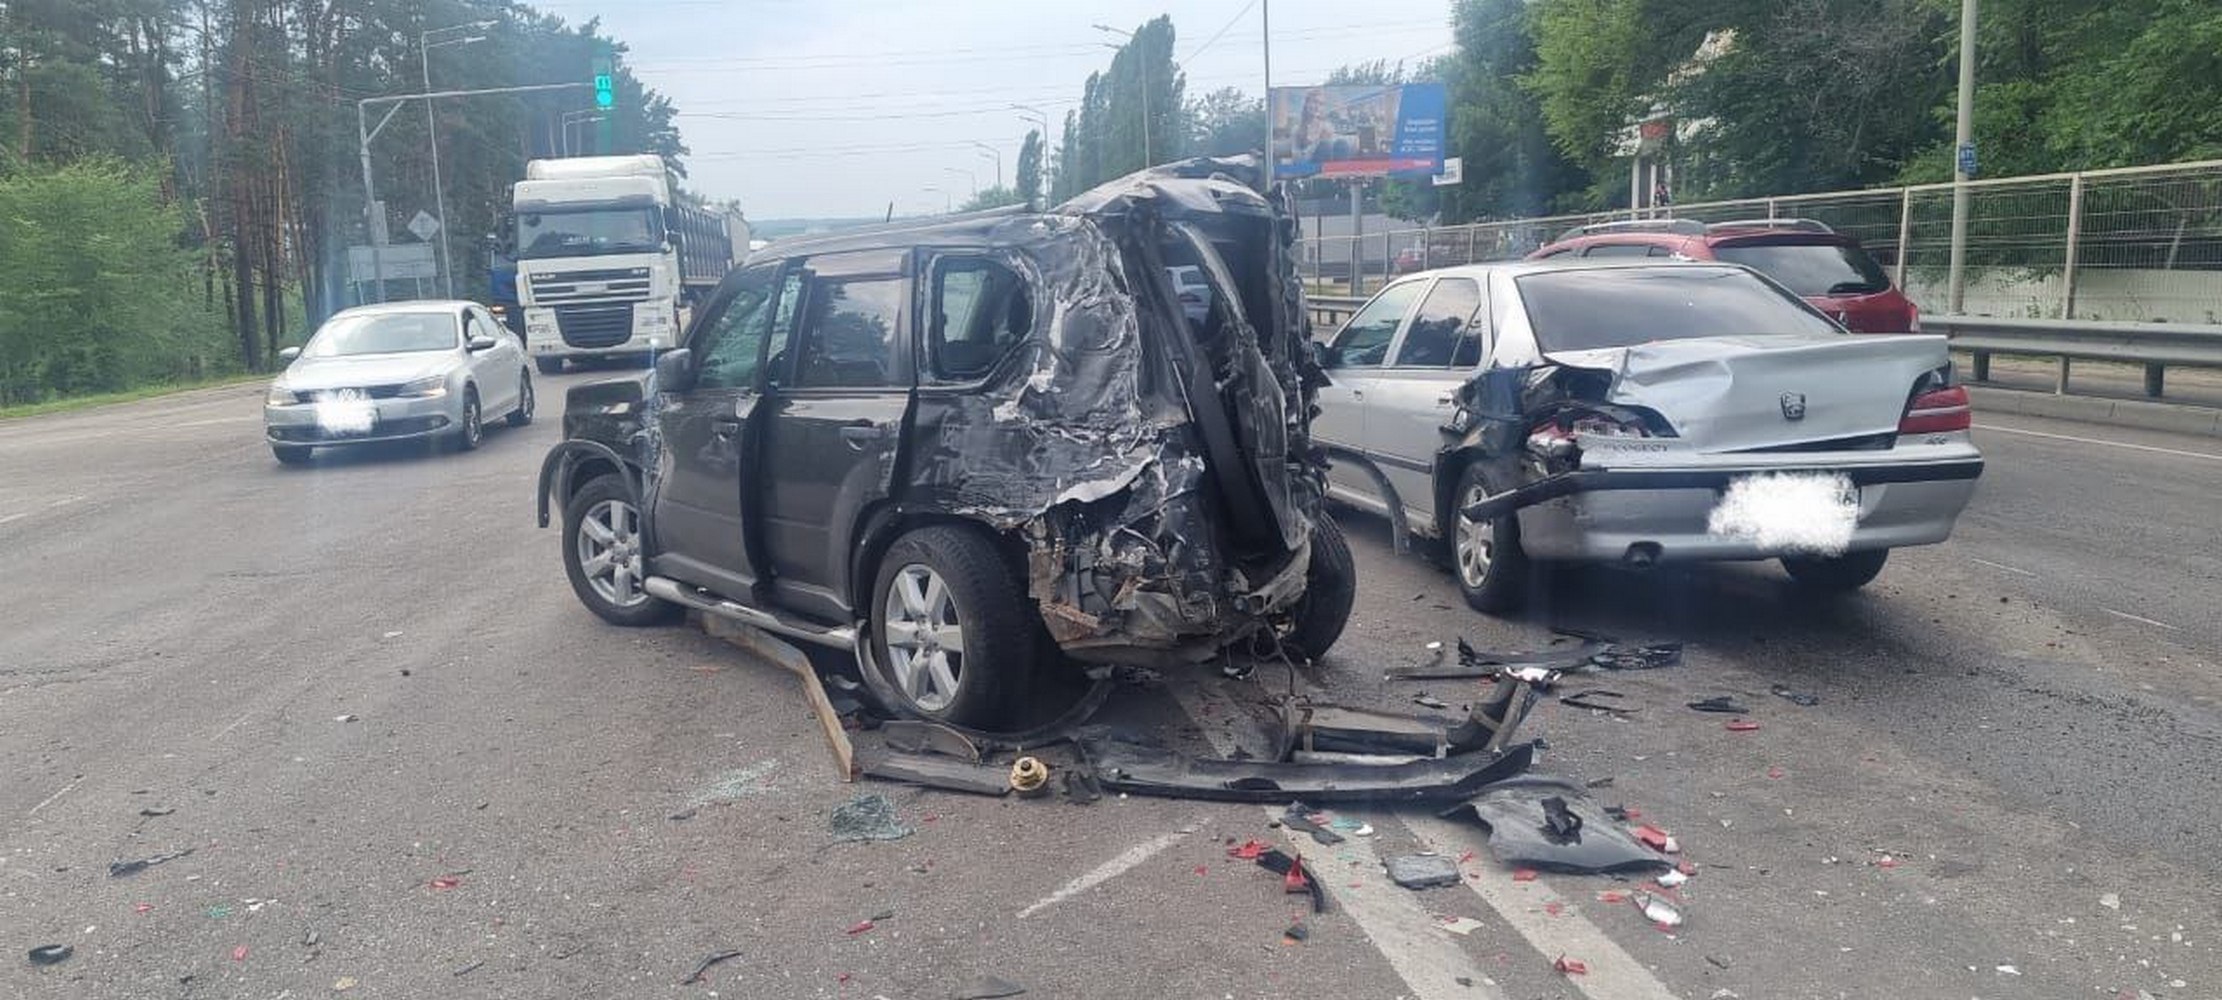 Восемь автомобилей жестко столкнулись в Воронеже